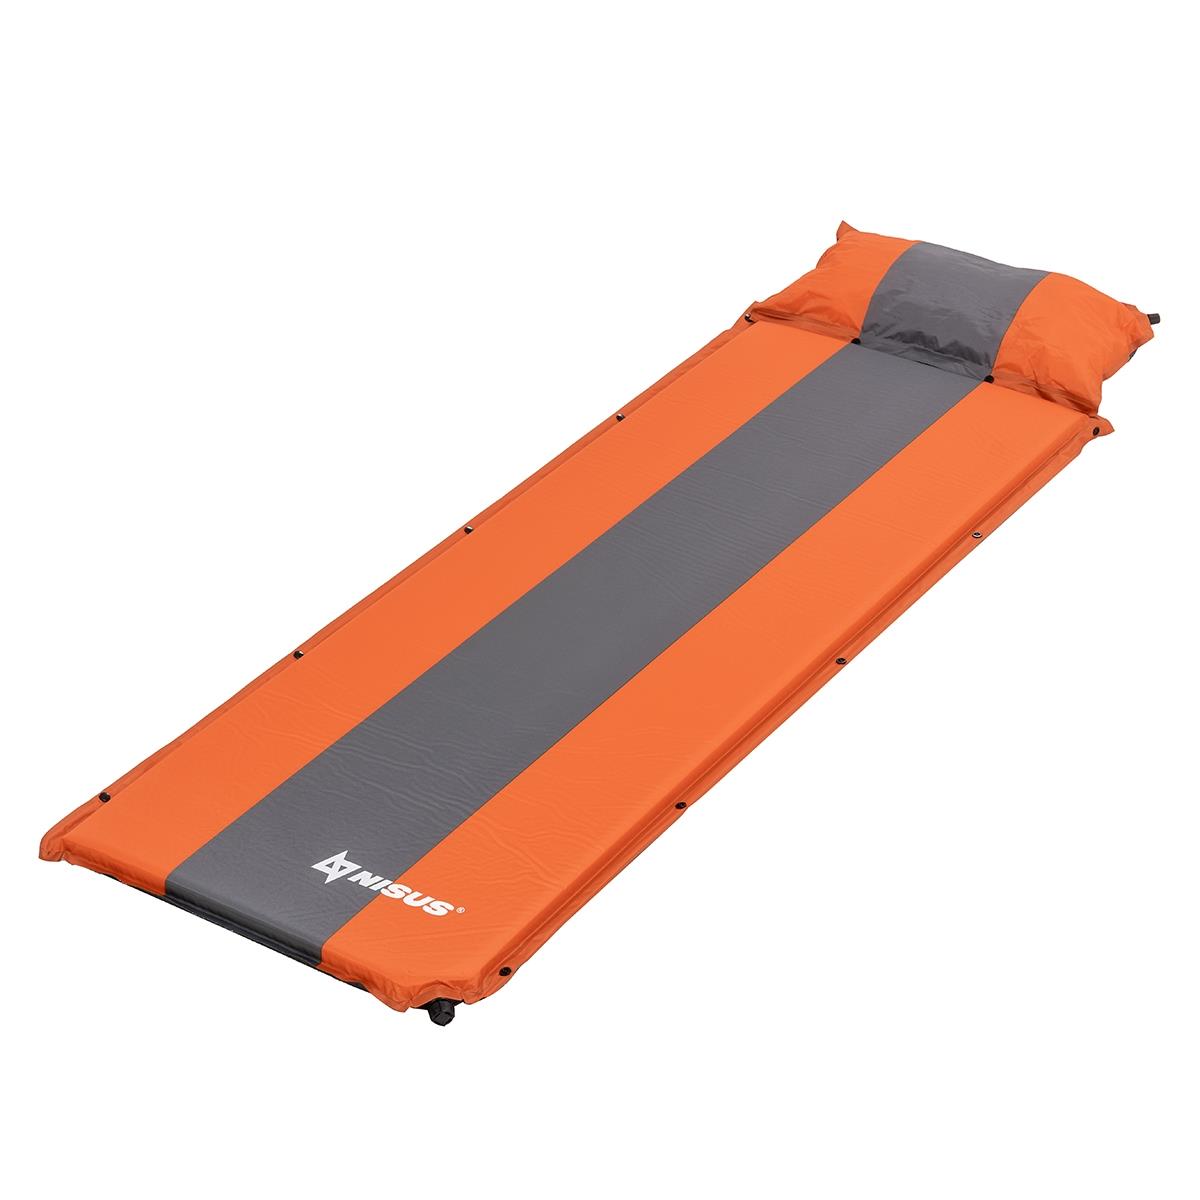 Коврик самонадув. с подушкой 30-170x65x5 оранжевый/серый (N-005P-OG) Nisus коврик для ванны fora